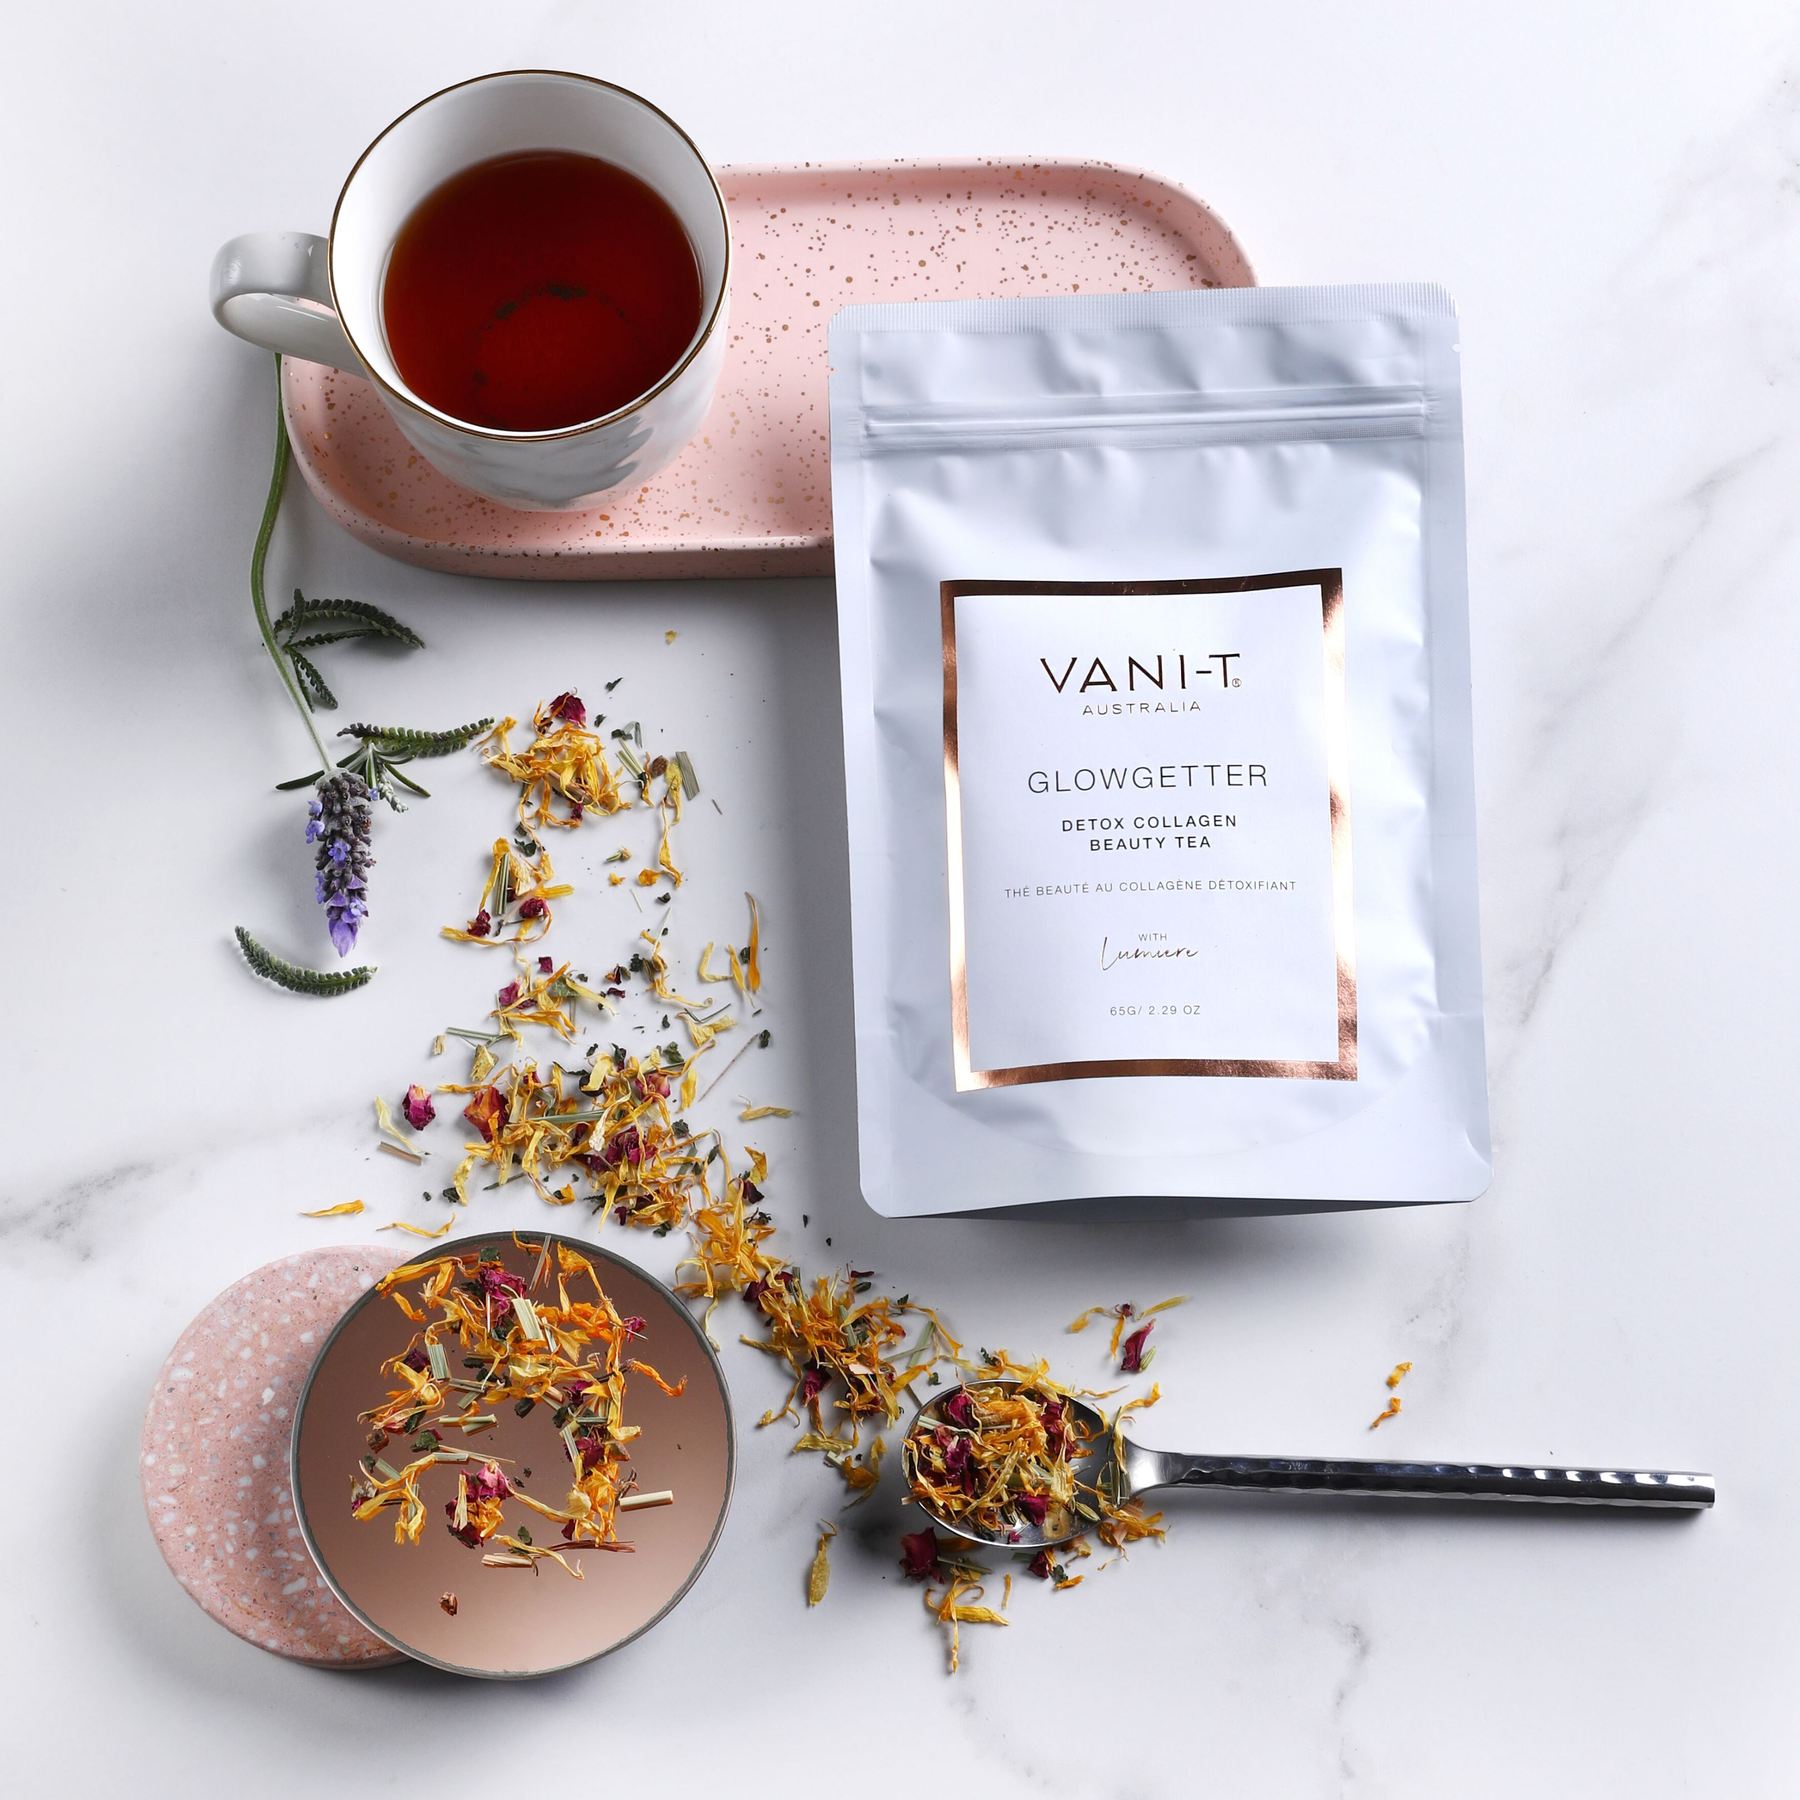 VANI-T Glowgetter Detox Collagen Beauty Tea - sammi